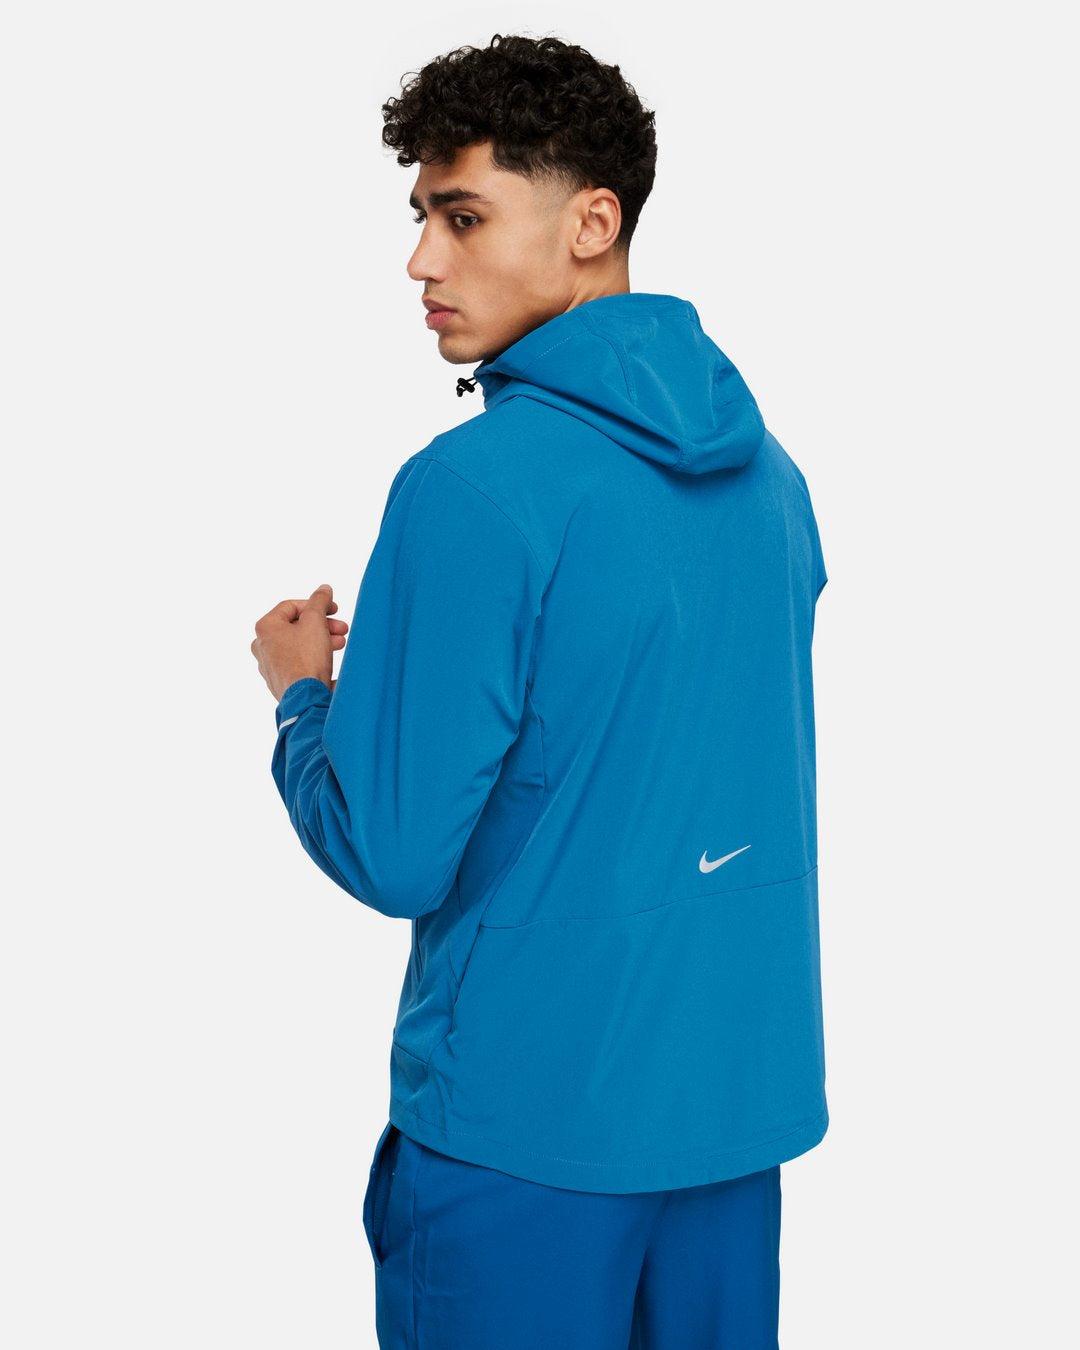 Nike Unlimited Jacket - Blue